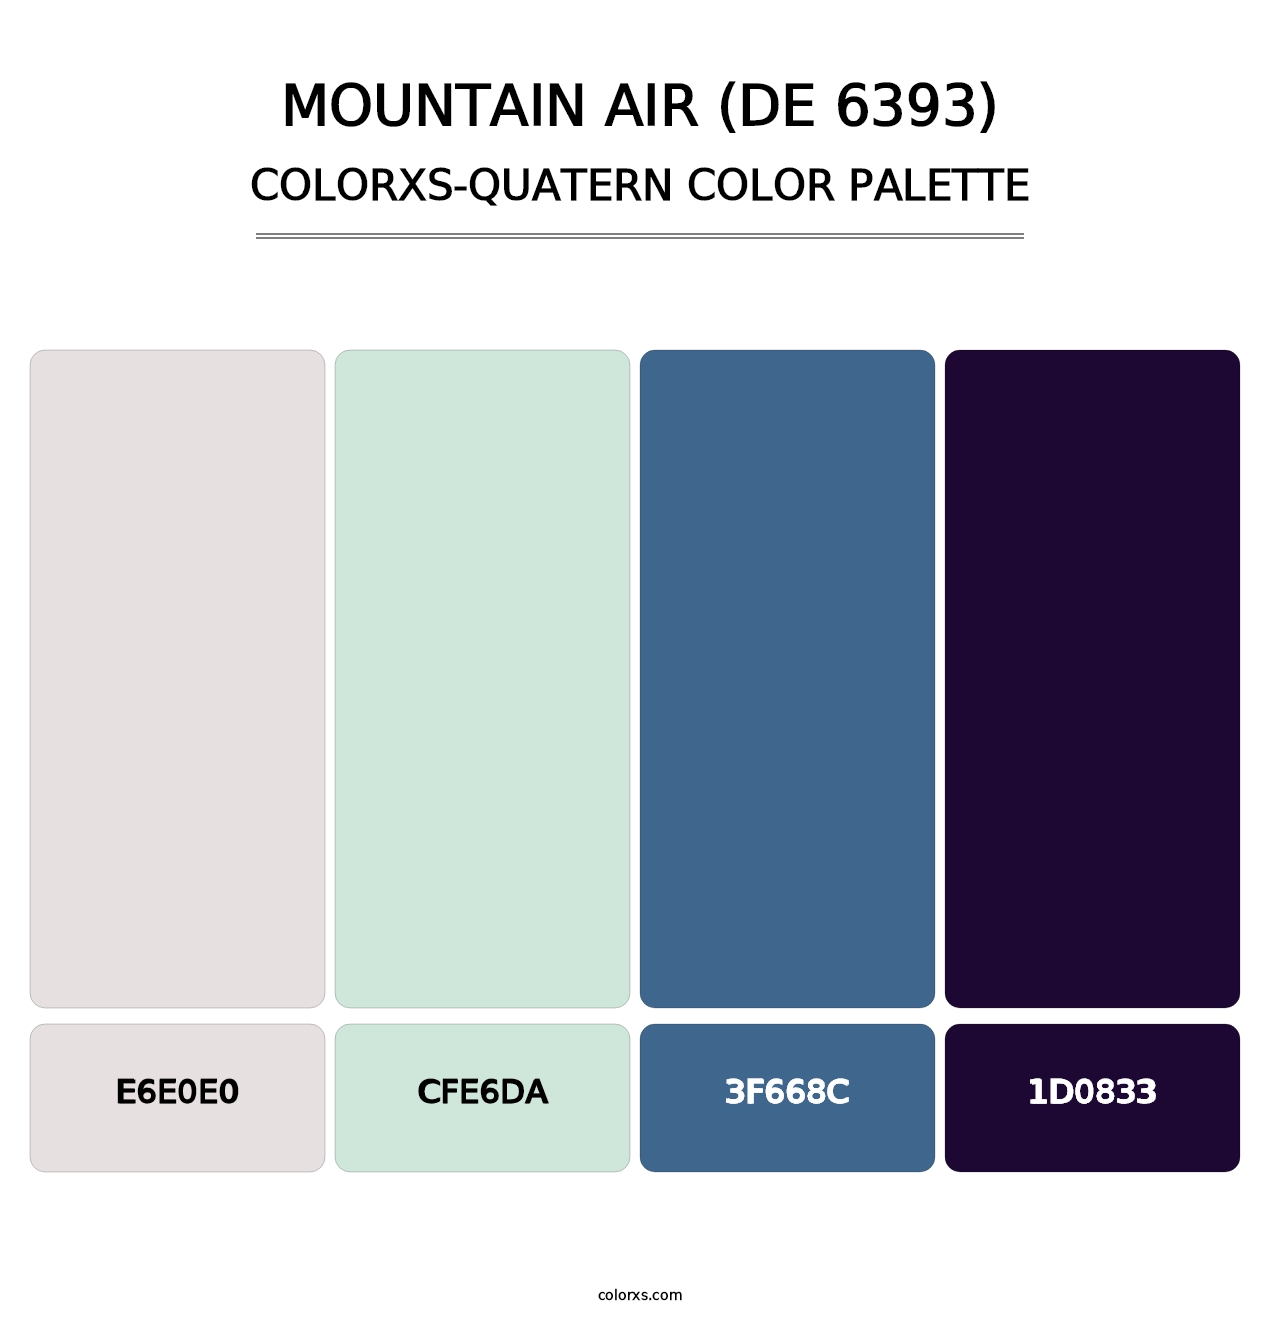 Mountain Air (DE 6393) - Colorxs Quatern Palette